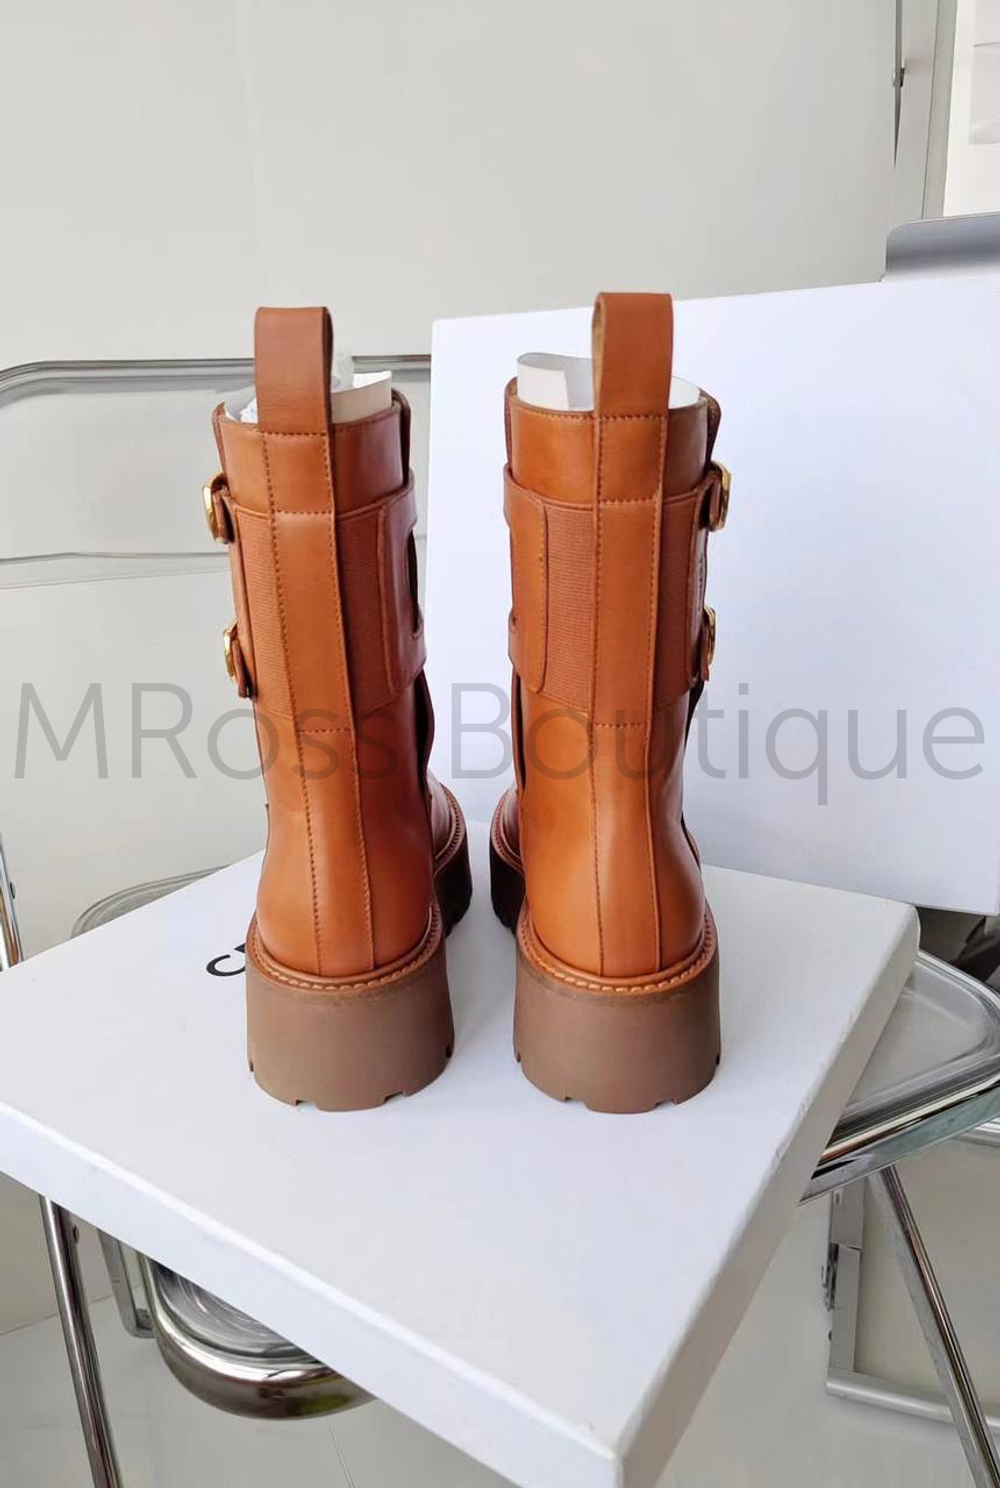 Ботинки ботильоны Селин коричневого цвета Celine премиум класса